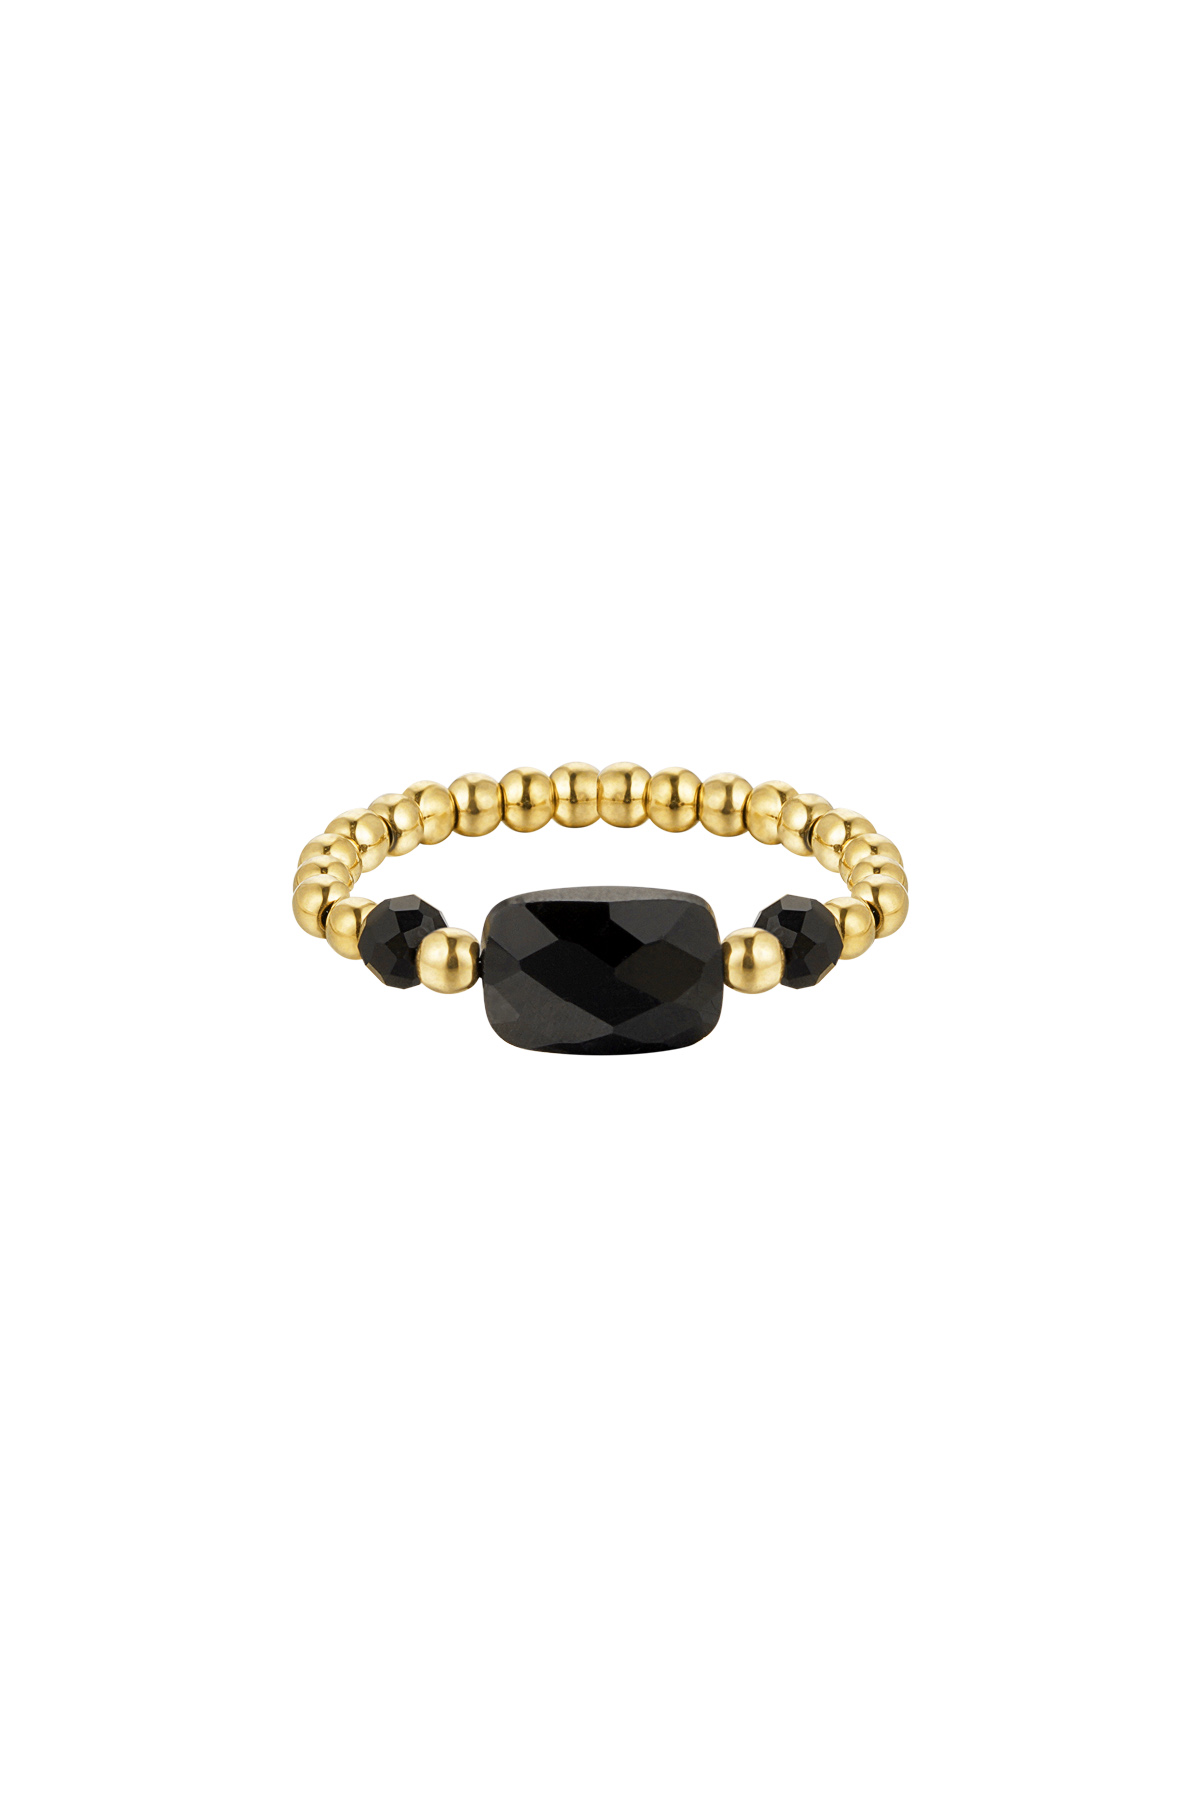 Elastieken ring drie kralen - zwart - Natuurstenen collectie Zwart & Goud Stone One size h5 